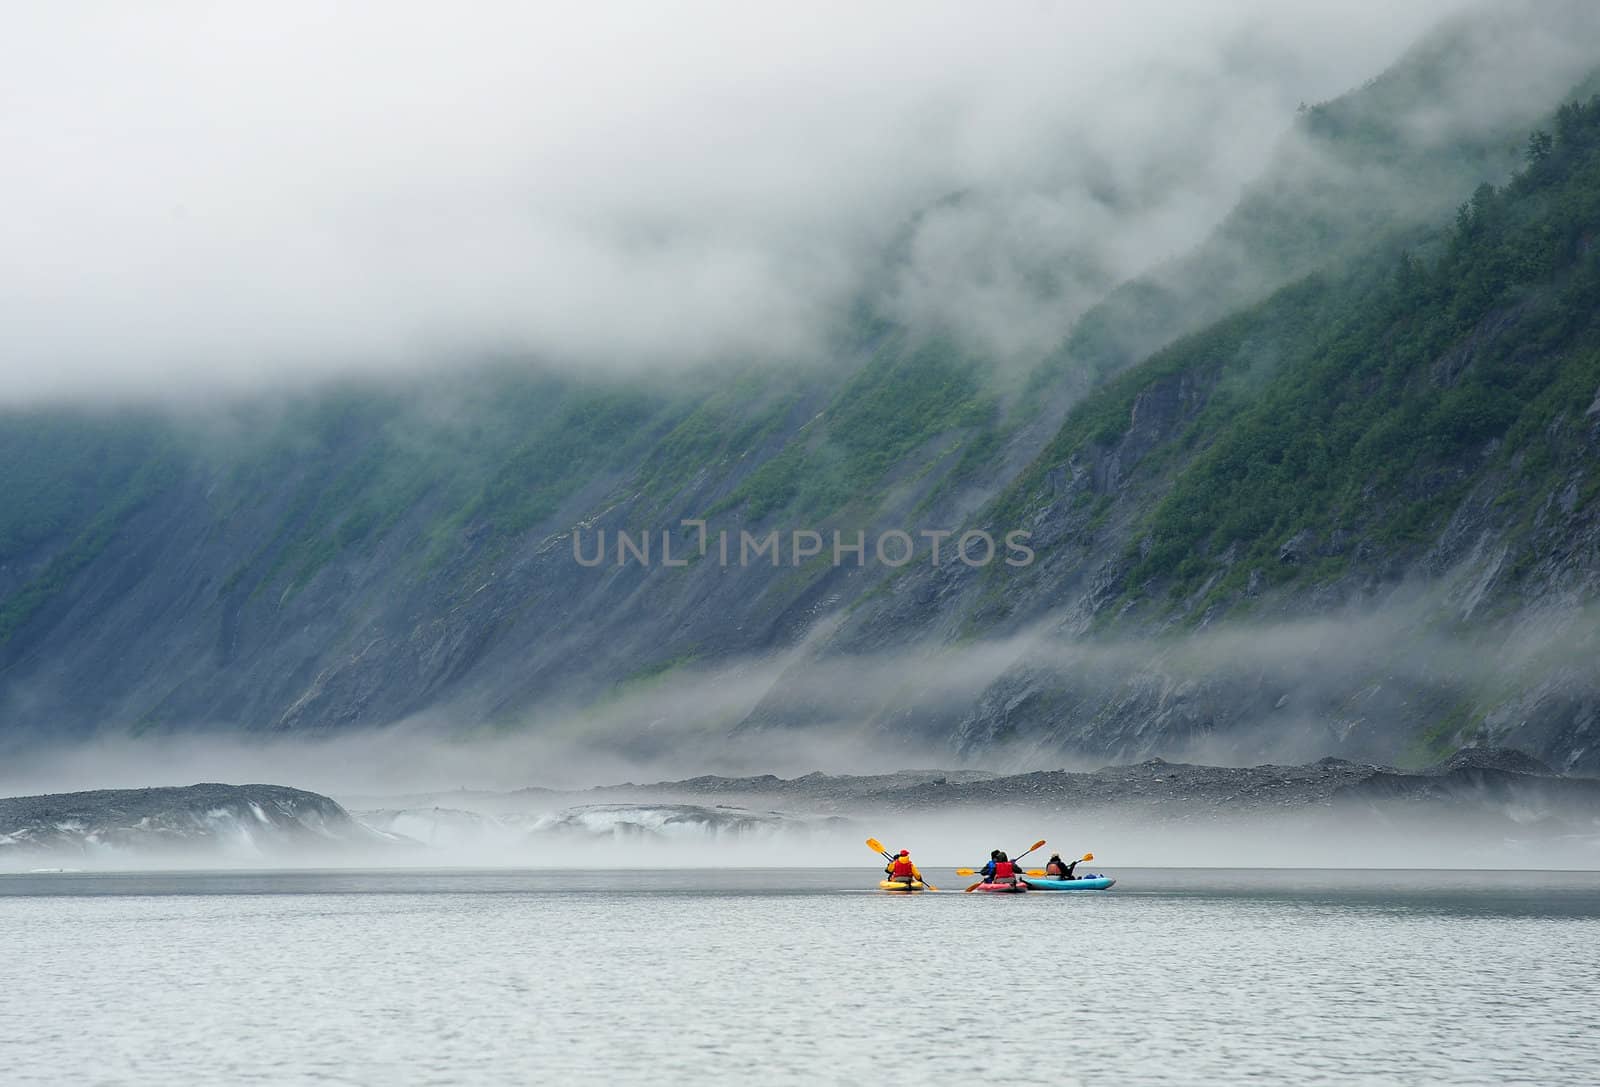 kayak in Valdez Glacier, Alaska with misty atmosphere